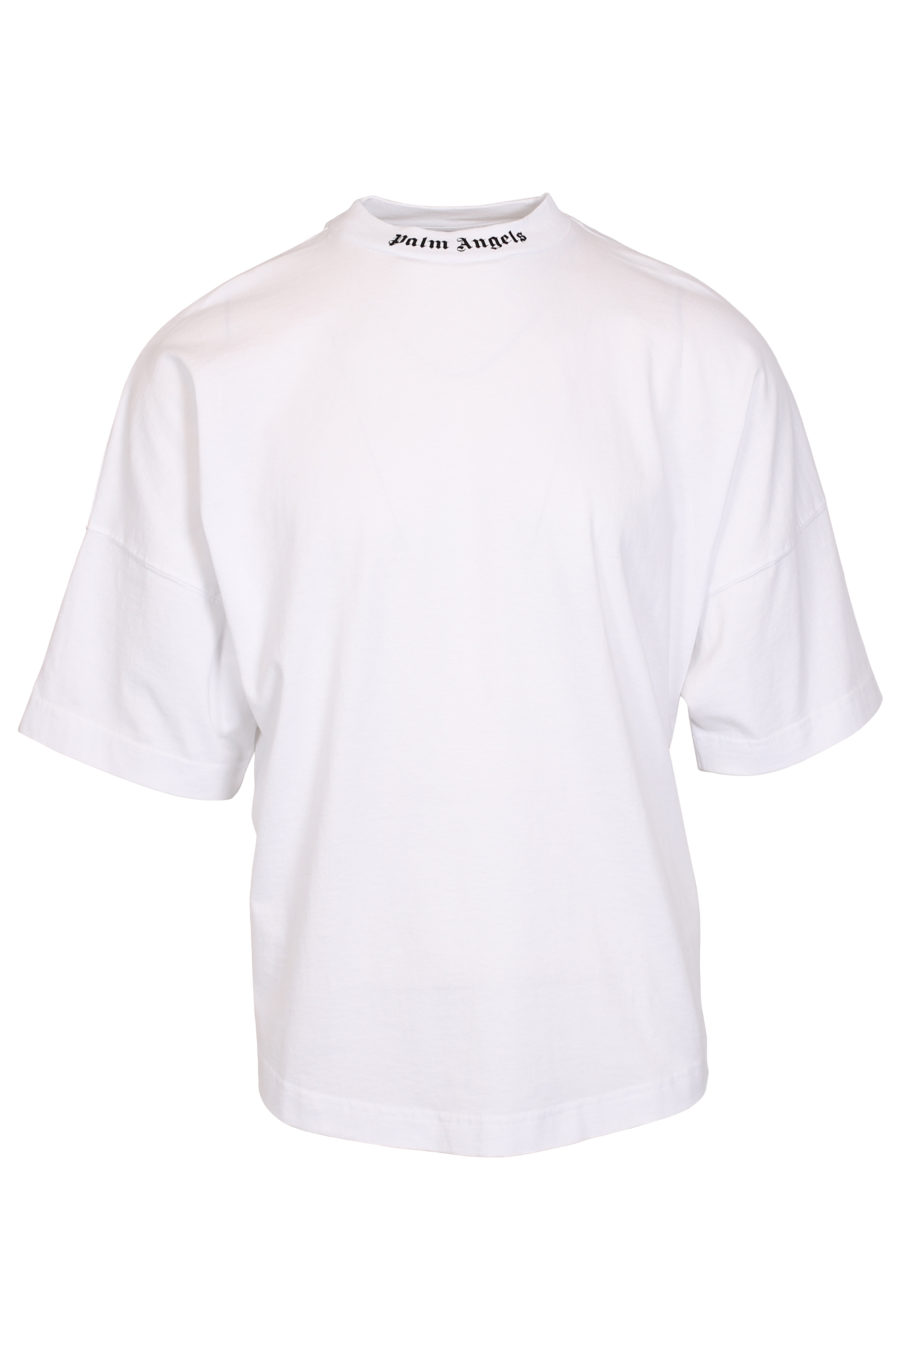 Camiseta blanca oversize con logotipo en el cuello - IMG 1032